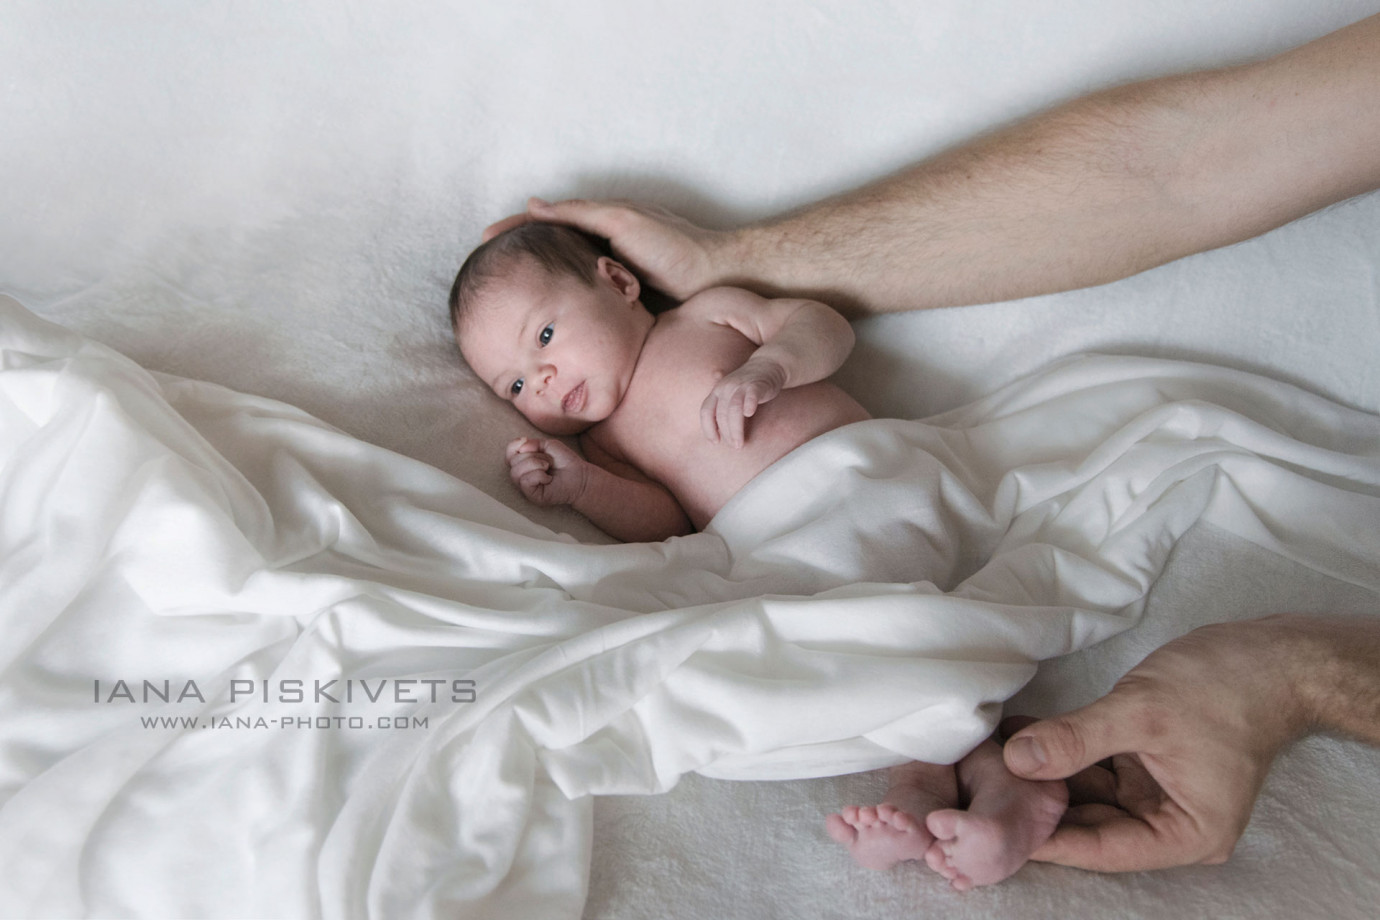 fotograf warszawa iana-piskivets portfolio zdjecia noworodkow sesje noworodkowe niemowlę